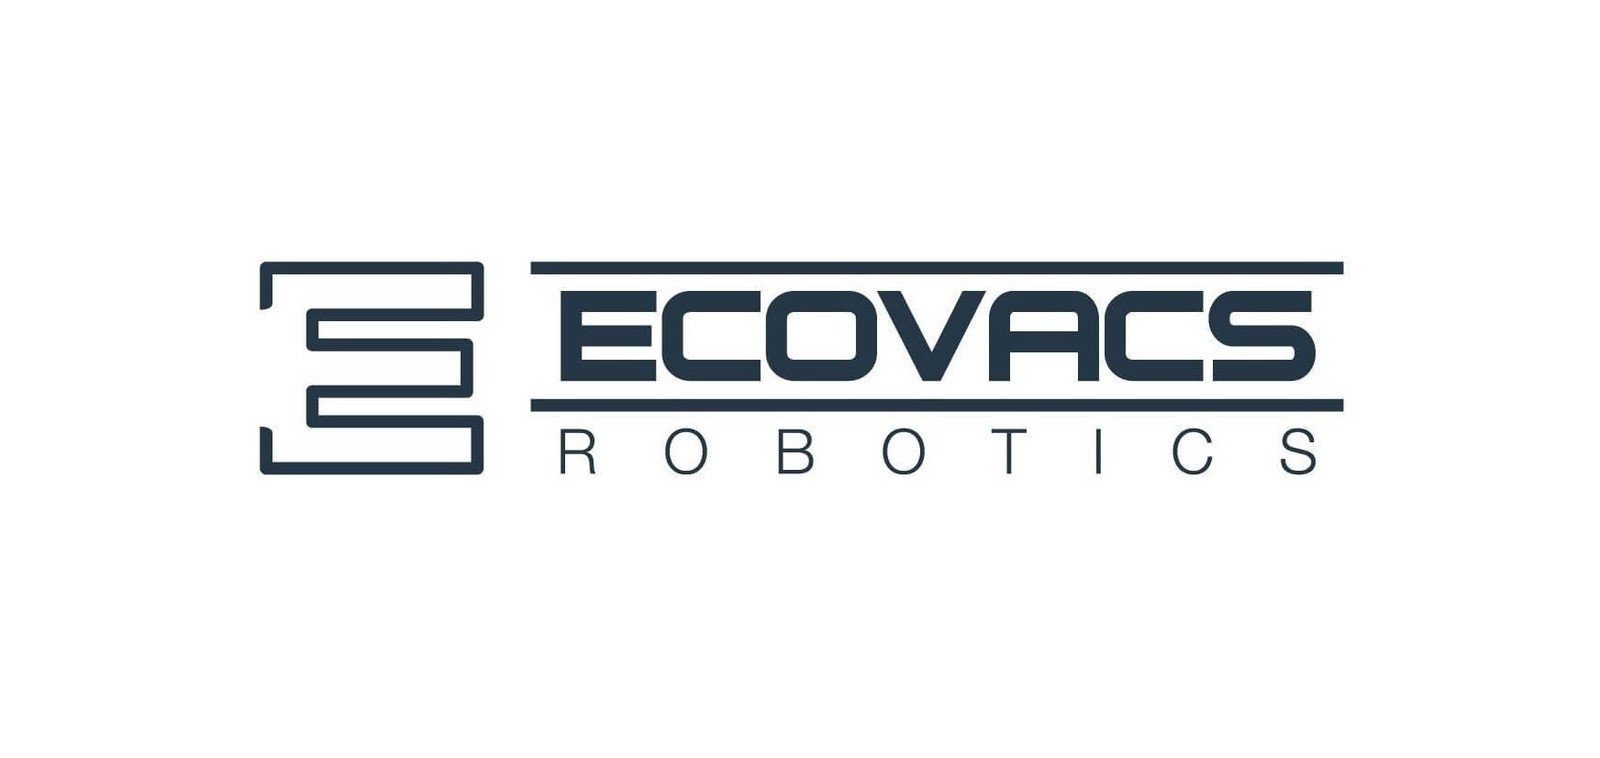 Ecovacs robotics logo